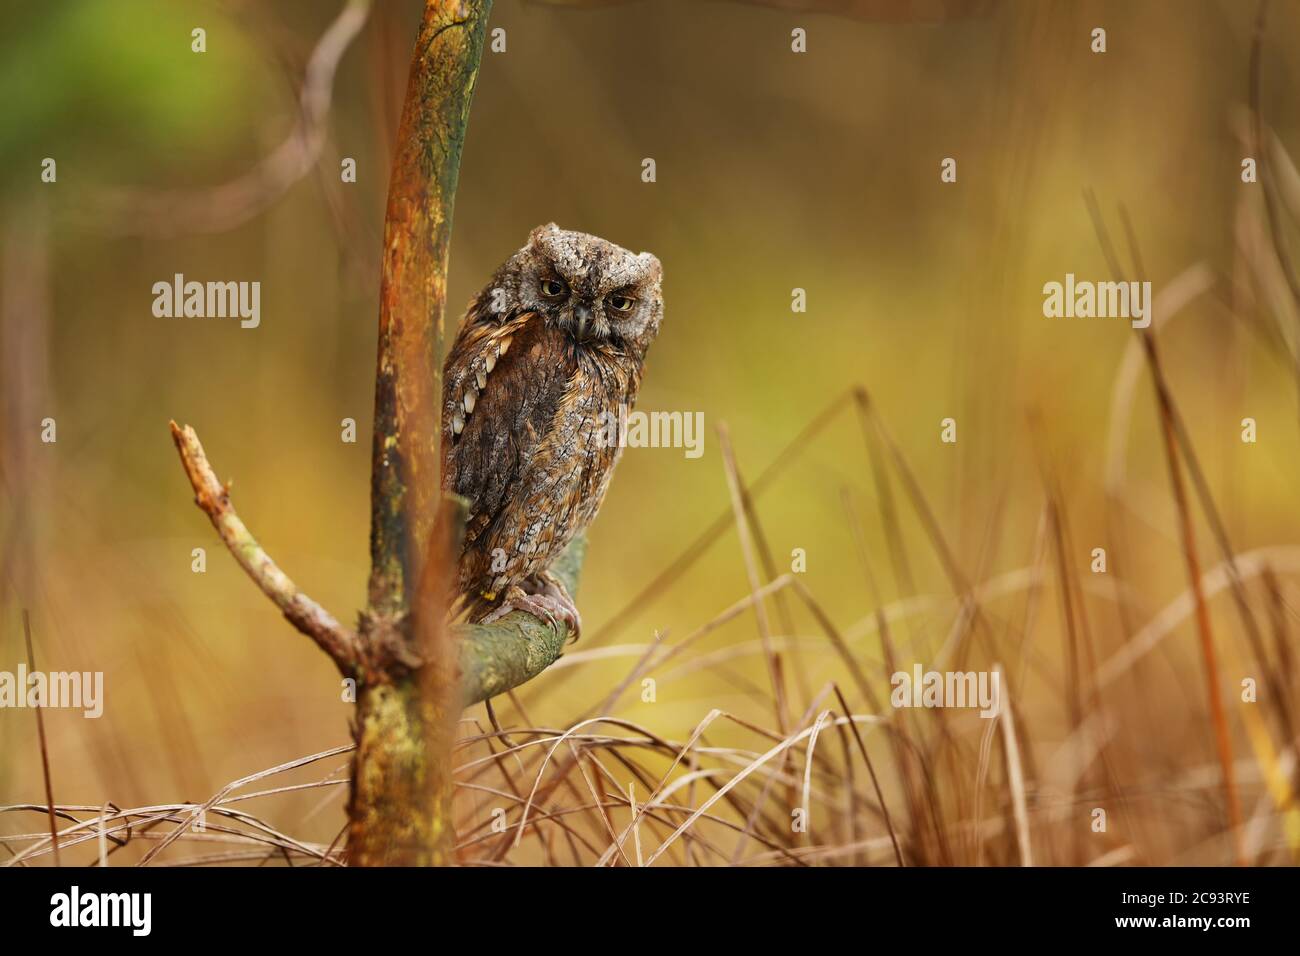 Scheule Eule, Otus Scheule, sitzend auf einem Ast. Tierwelt Tierszene aus der Natur. Kleiner Vogel, Eule Nahaufnahme Detail Porträt in der Natur, Rumänien Stockfoto